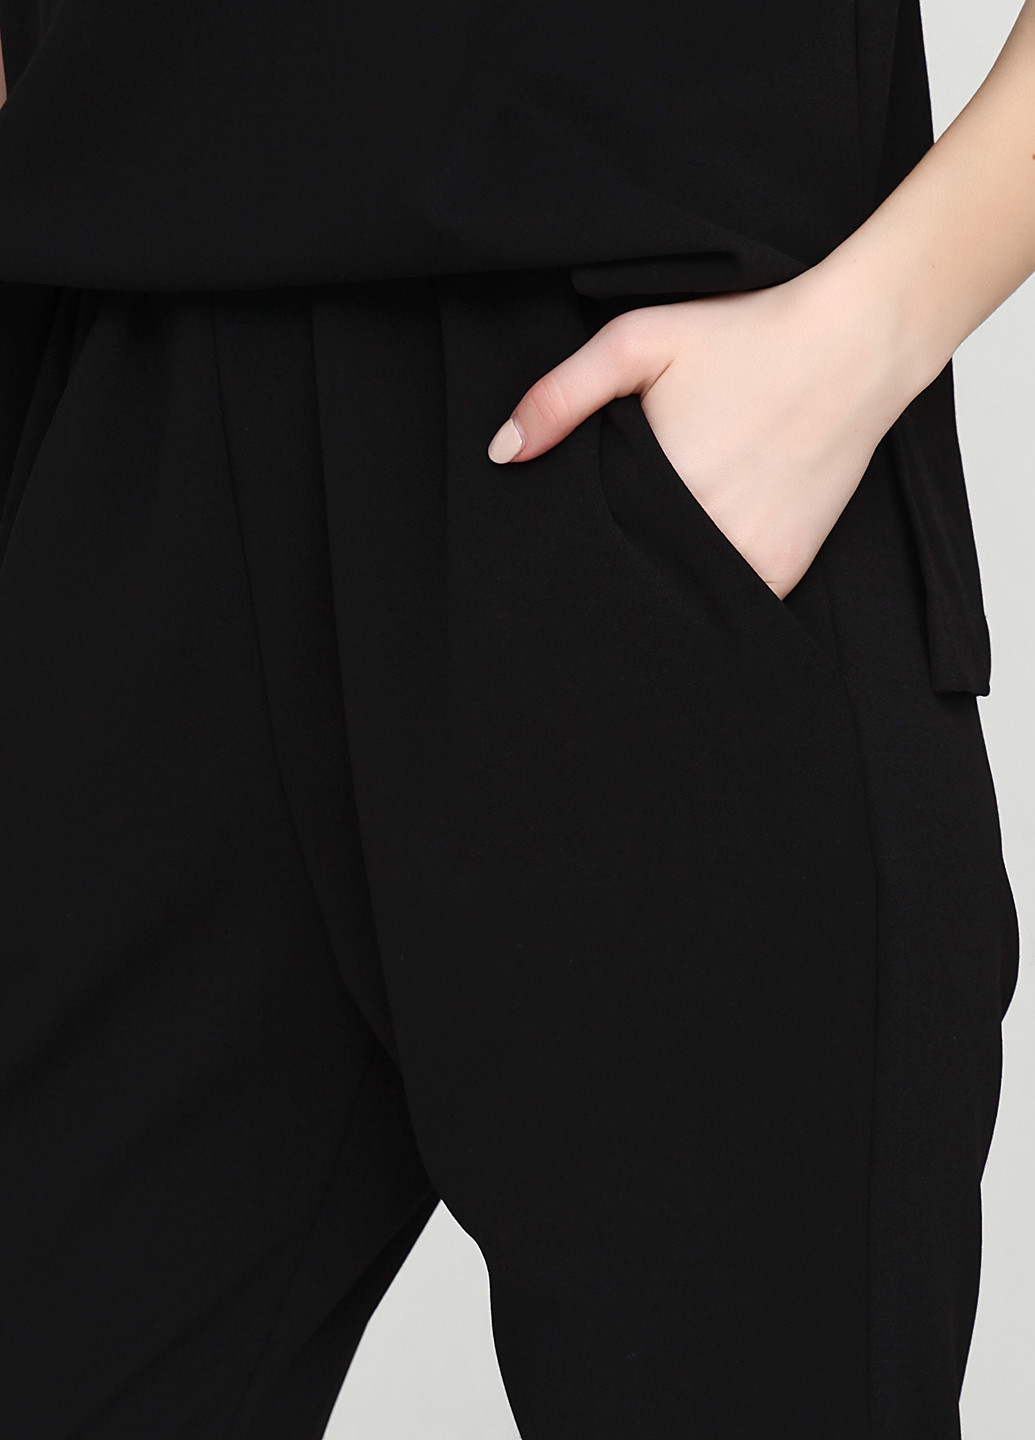 Комбинезон Front комбинезон-брюки однотонный чёрный кэжуал